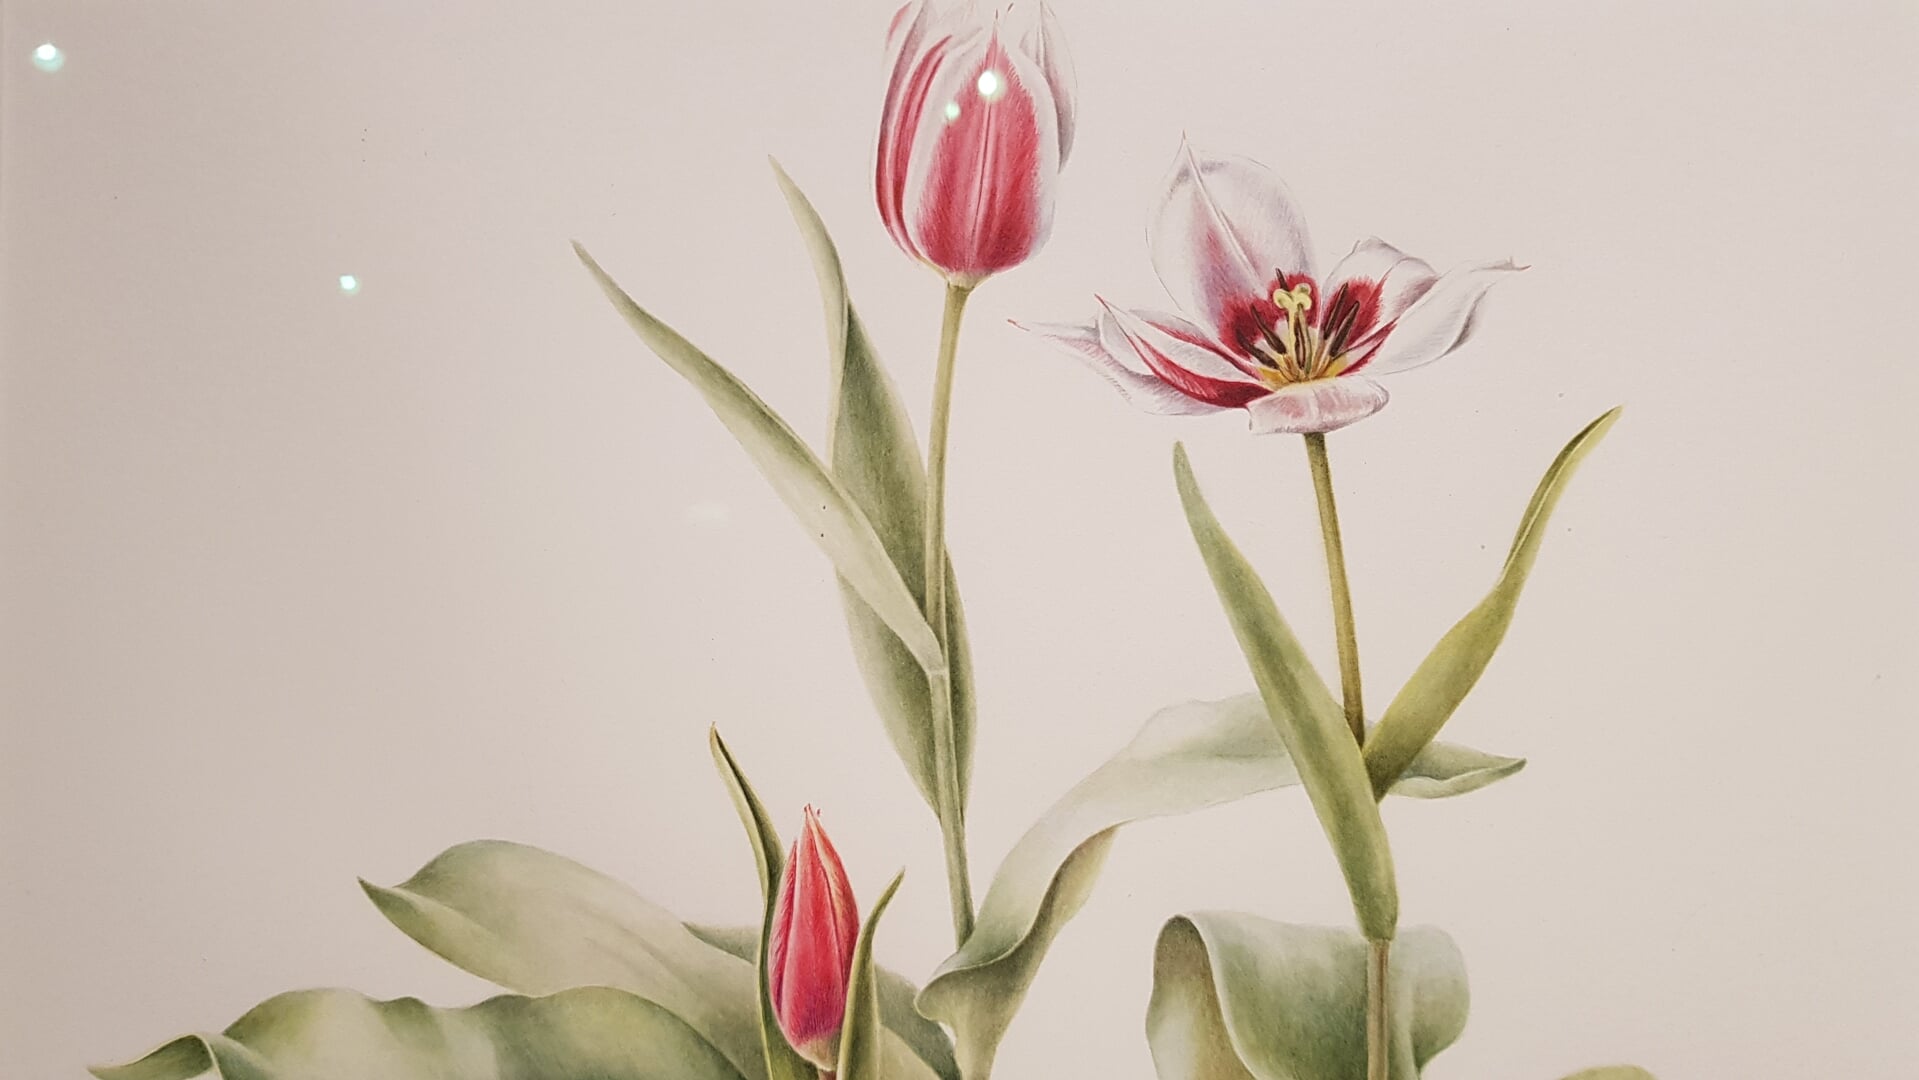 Een botanische tekening of aquarel toont een plant in detail. Het is een wetenschappelijk verantwoorde nauwkeurige weergave. 